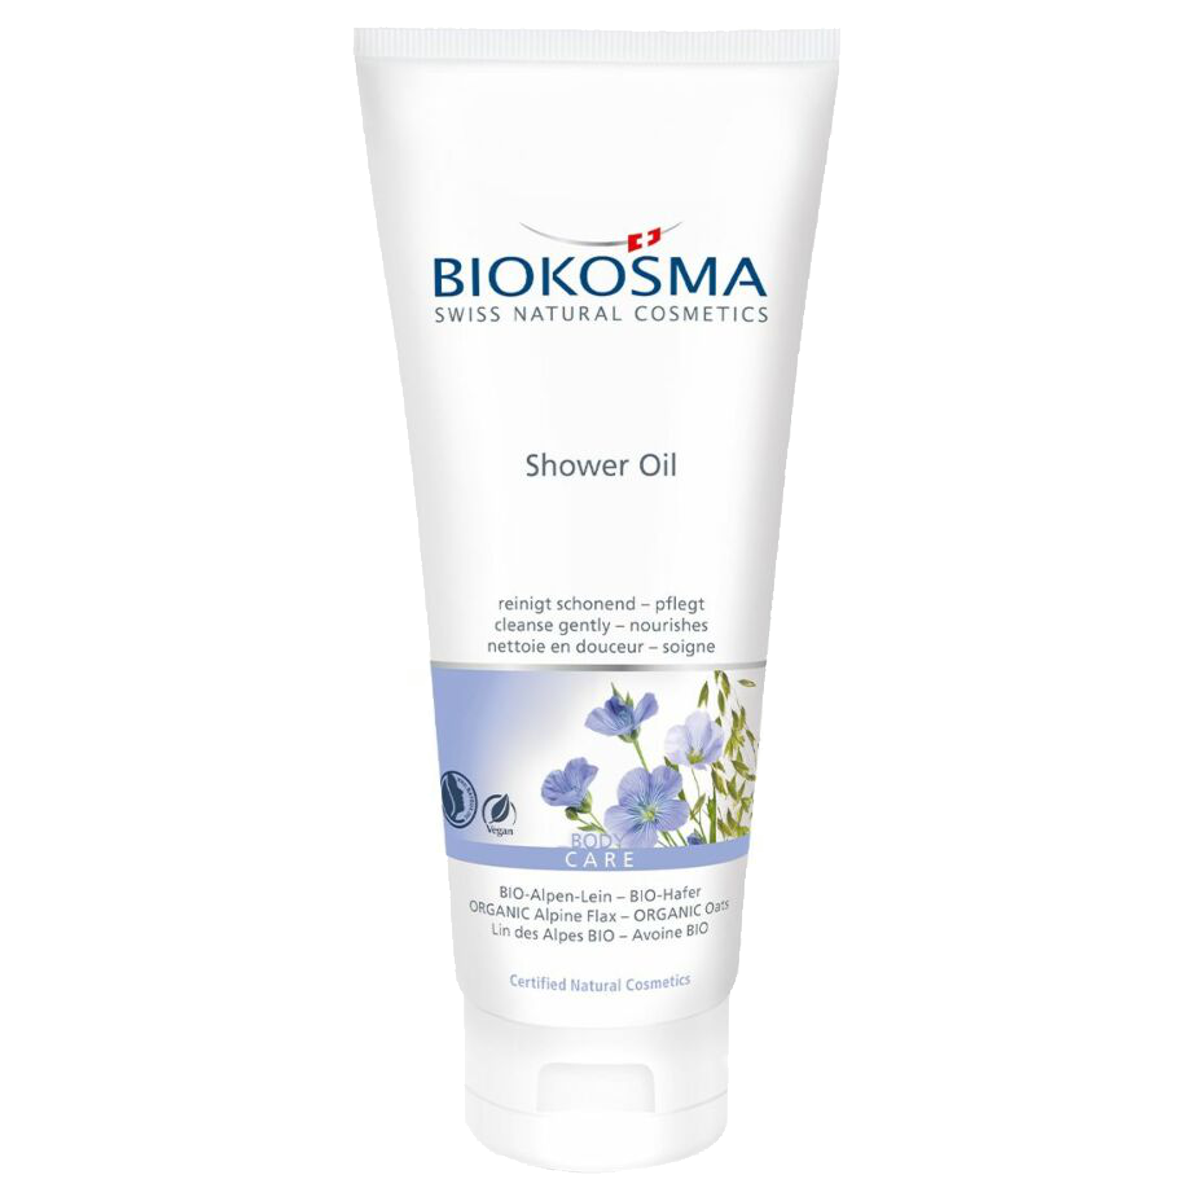 Biokosma Shower Oil Bio-Alpen-Lein Hafer 200 ml